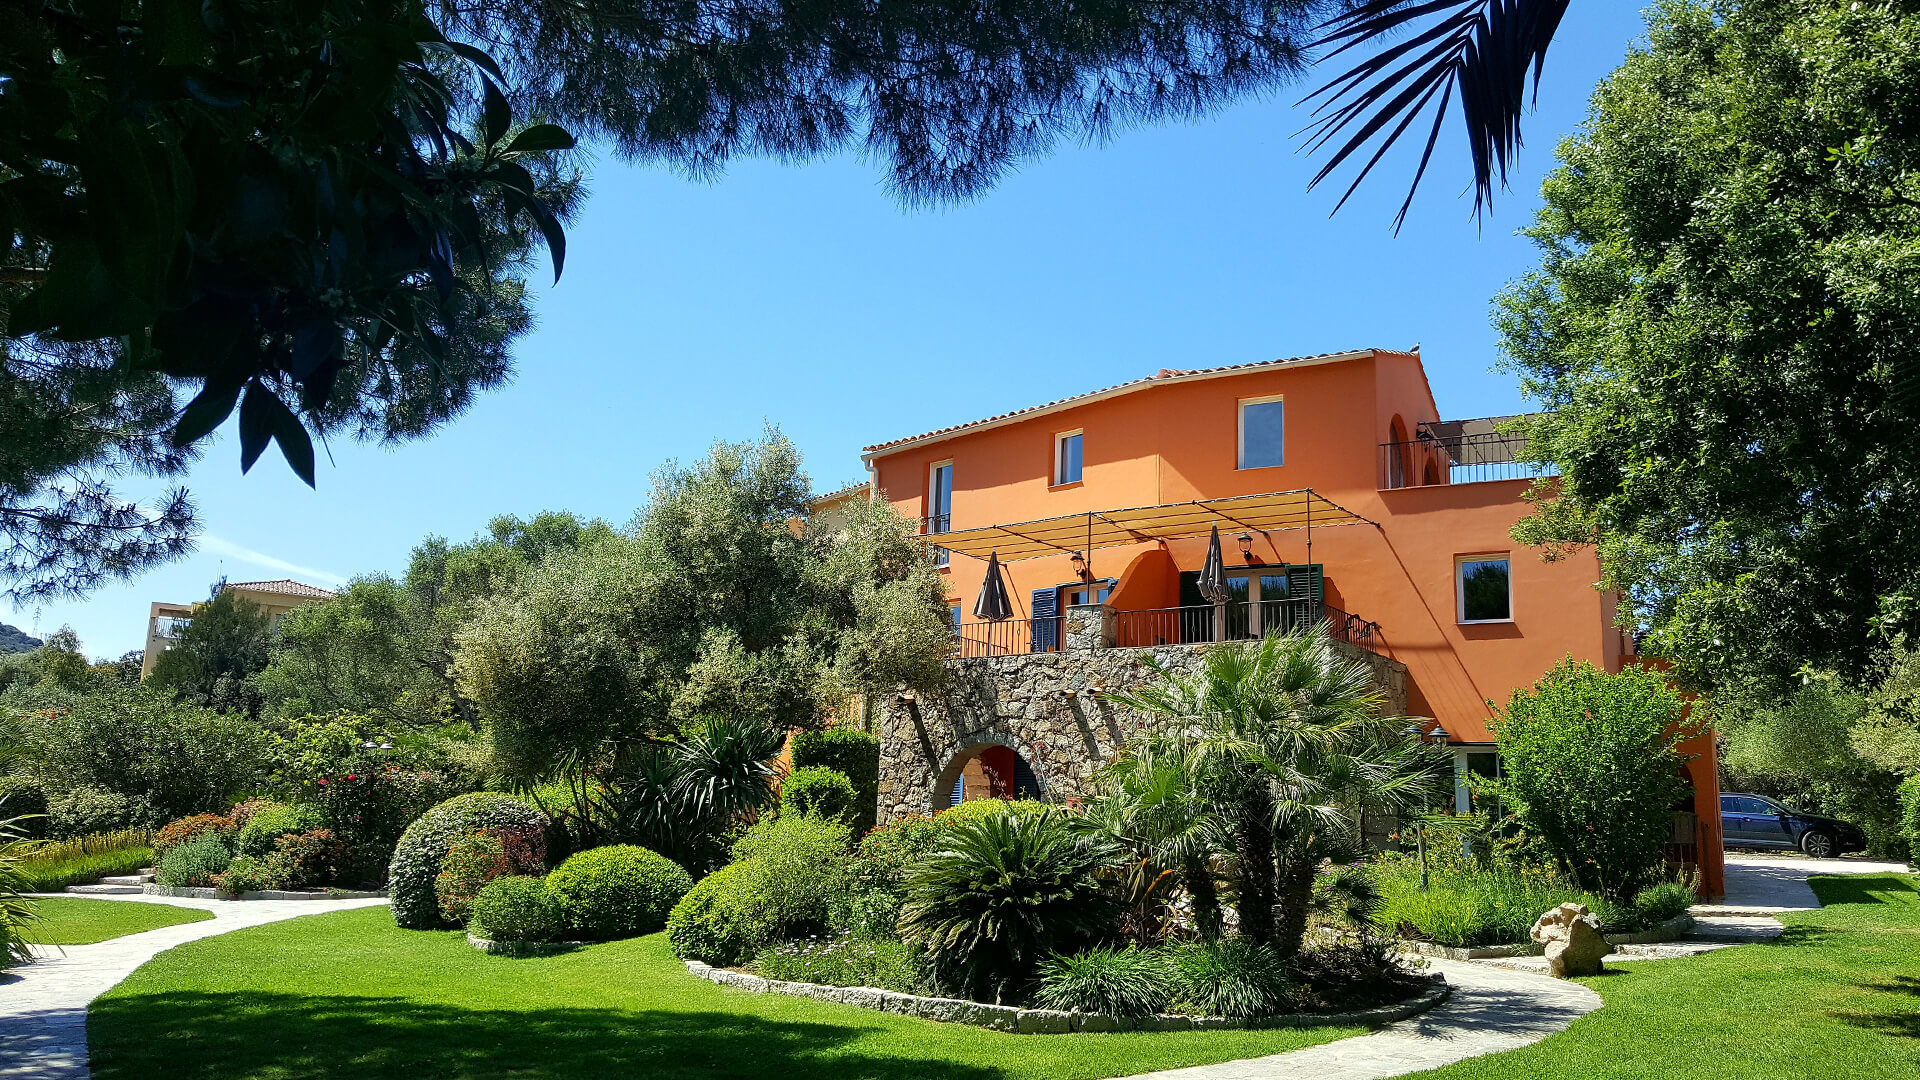 Résidence de vacances A Merula** Locations de vacances à Calvi Corse